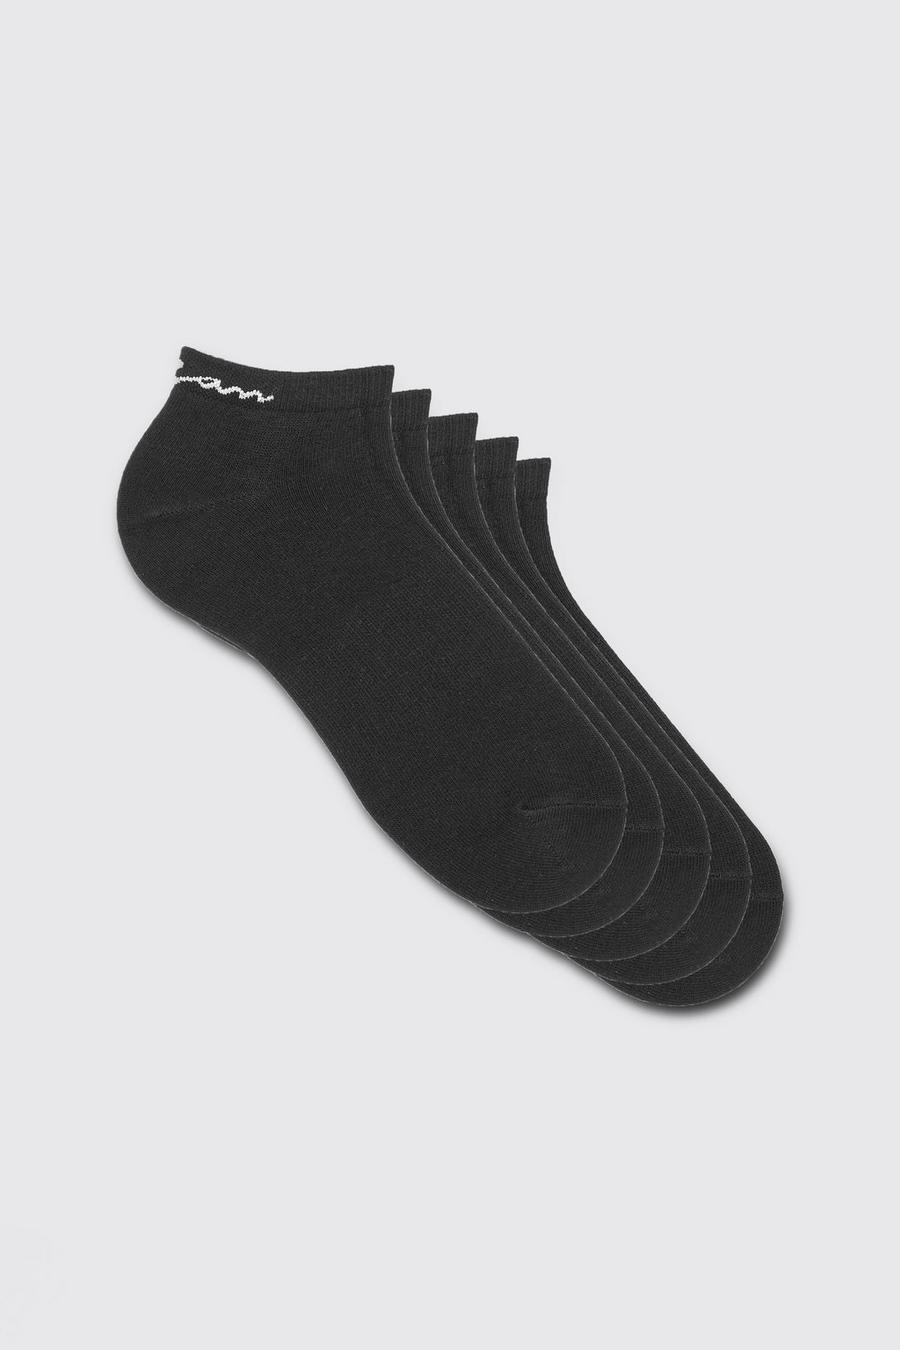 Pack de 5 pares de calcetines deportivos con firma MAN, Black nero